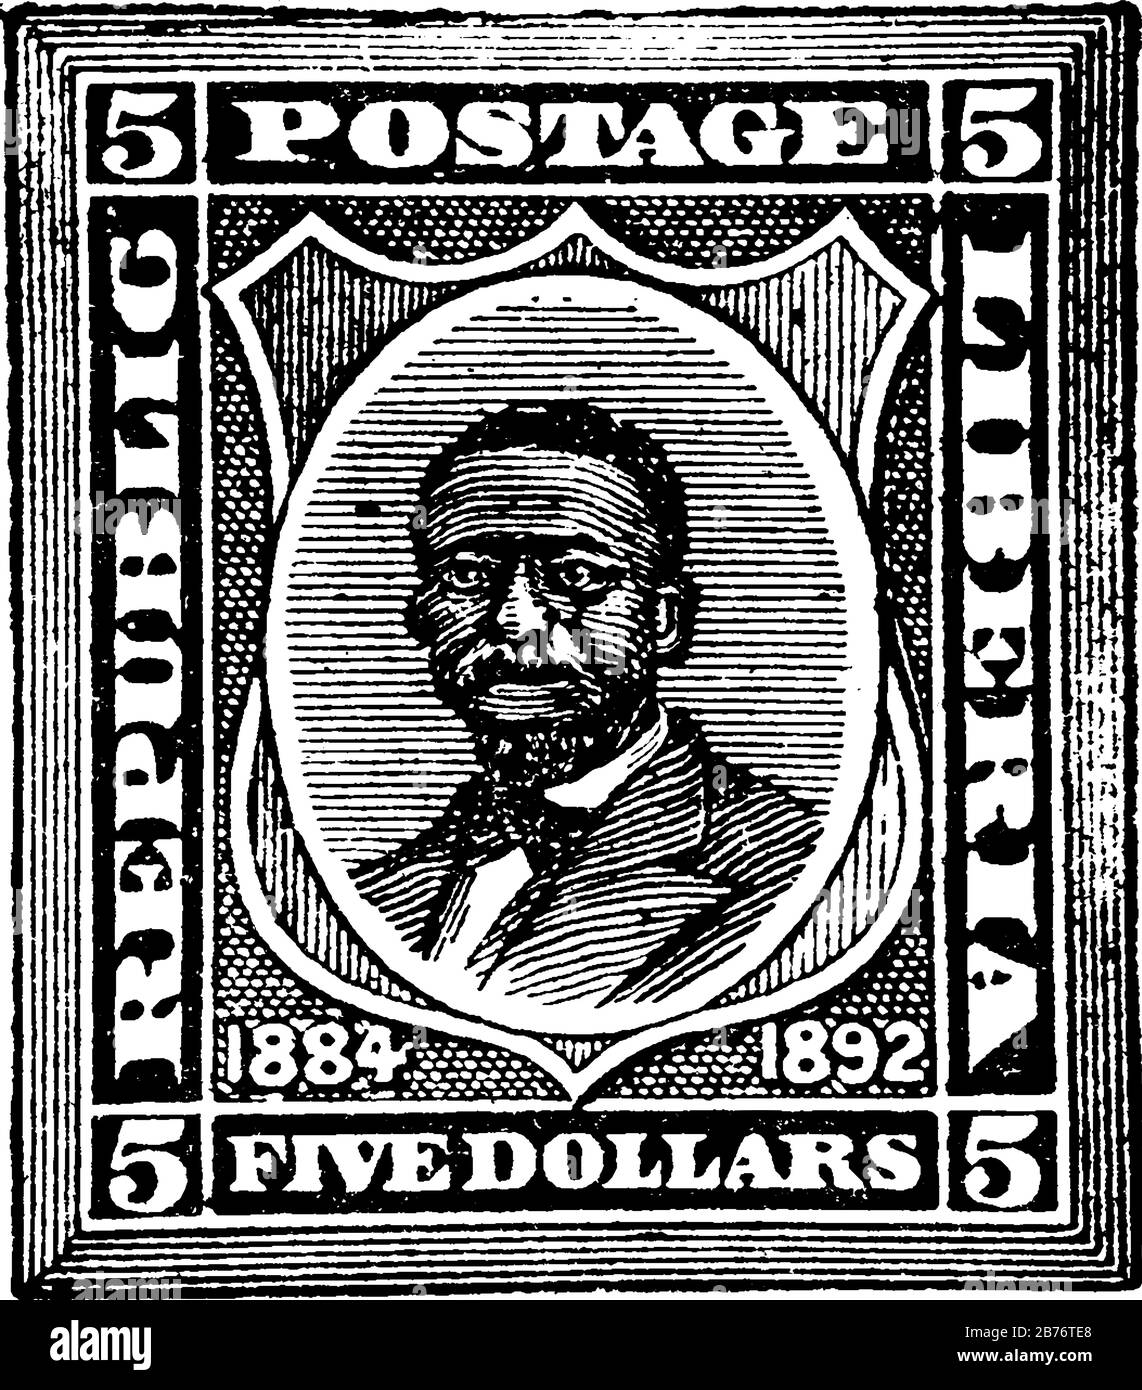 Liberia Stamp (5 dollari) dal 1892, un piccolo pezzo adesivo di carta attaccato a qualcosa per mostrare una quantità di denaro pagato, principalmente un francobollo, vinta Illustrazione Vettoriale